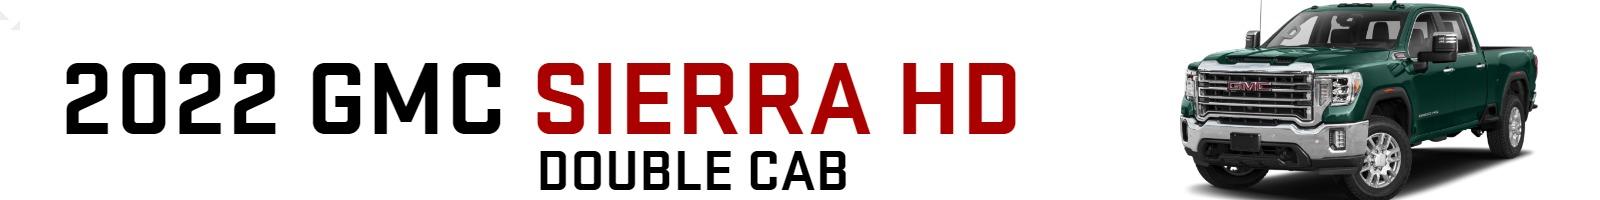 2022 GMC Sierra HD Double Cab